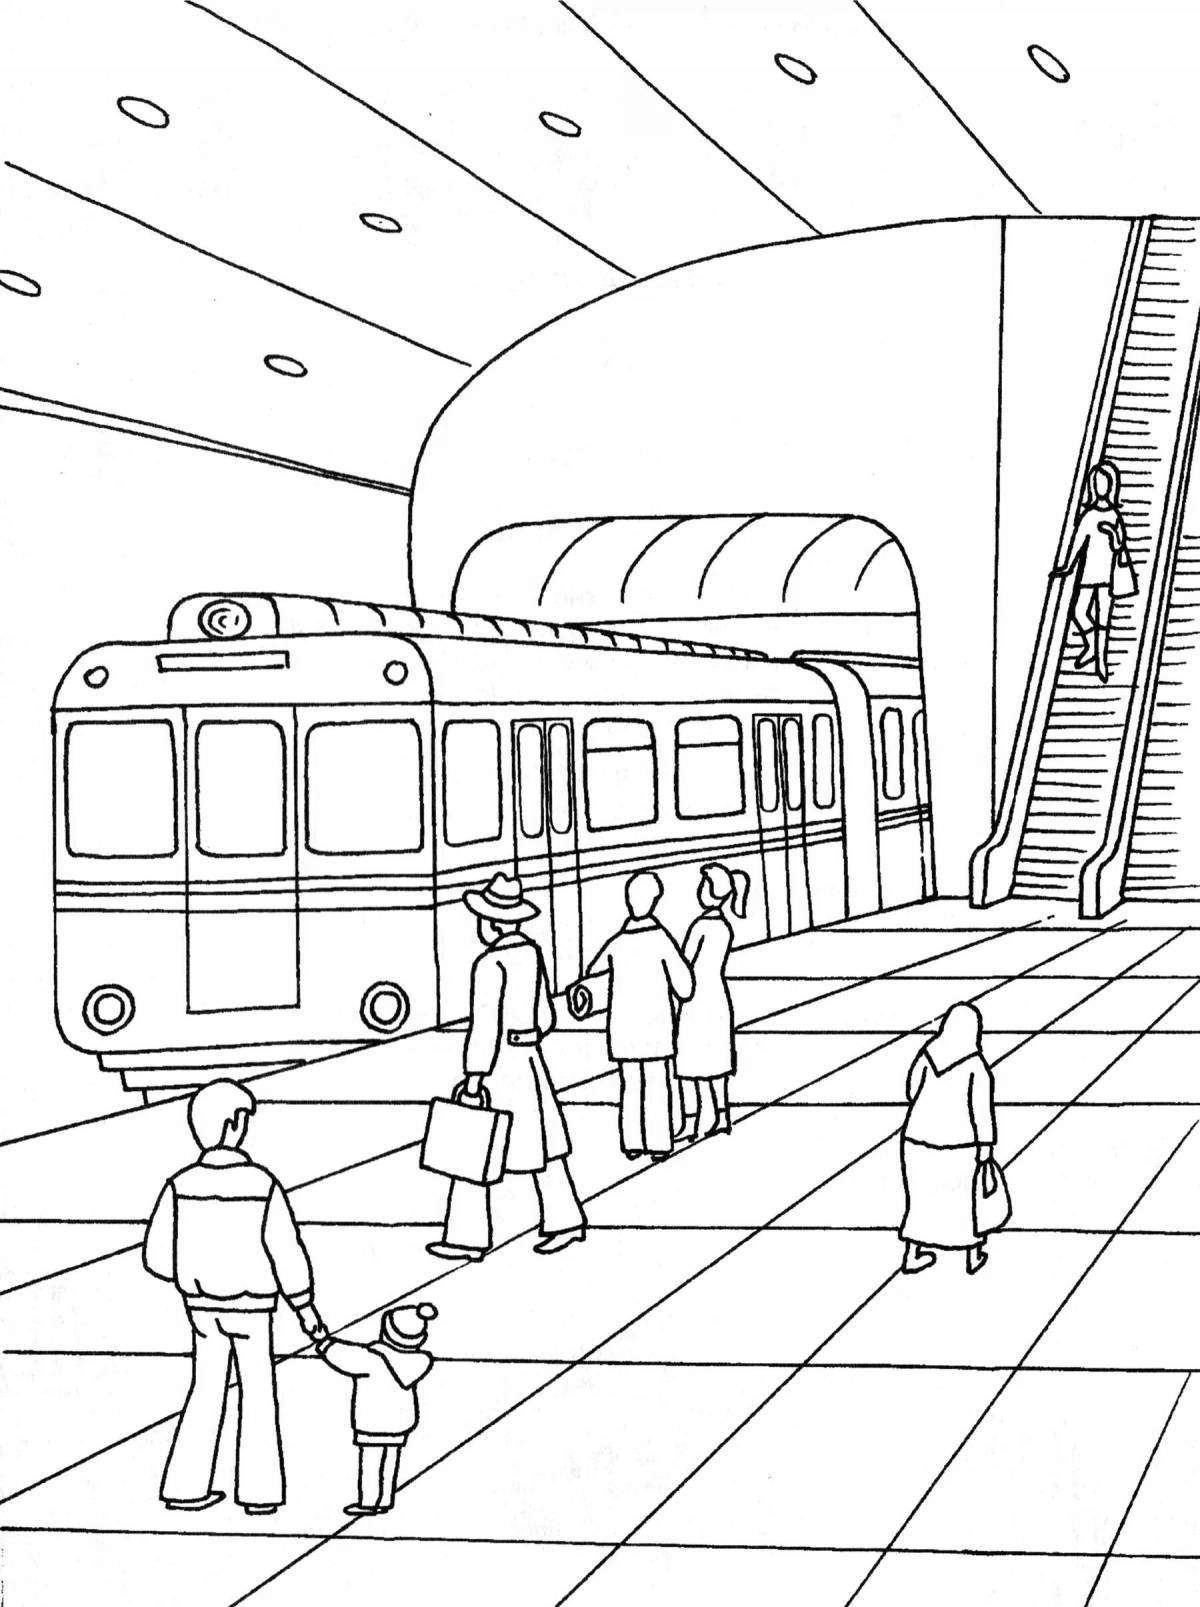 Привлекательная игра-раскраска subway